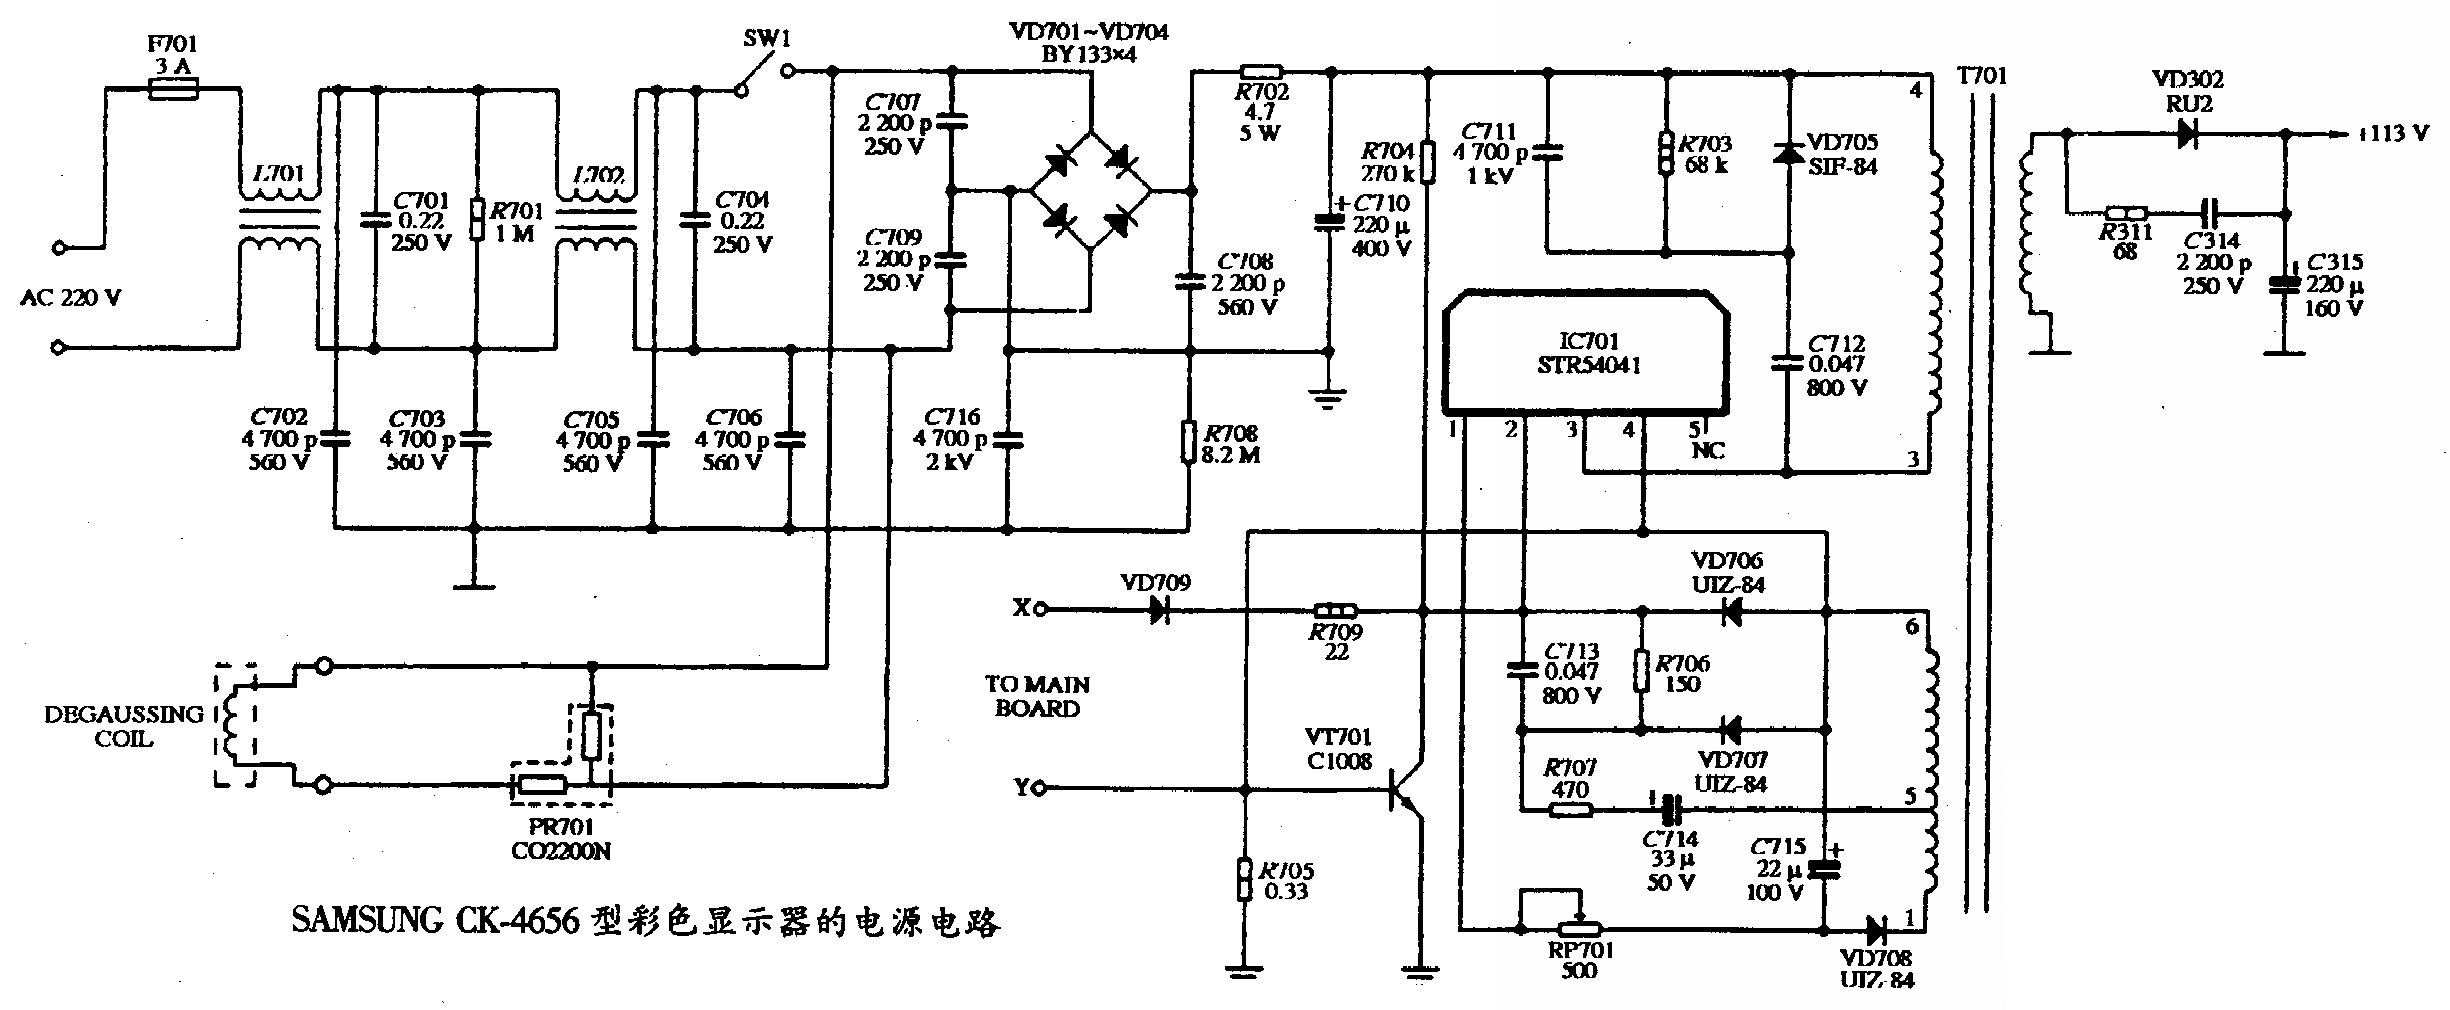 SAMSUNG CK-4656型彩色显示器的电源电路图